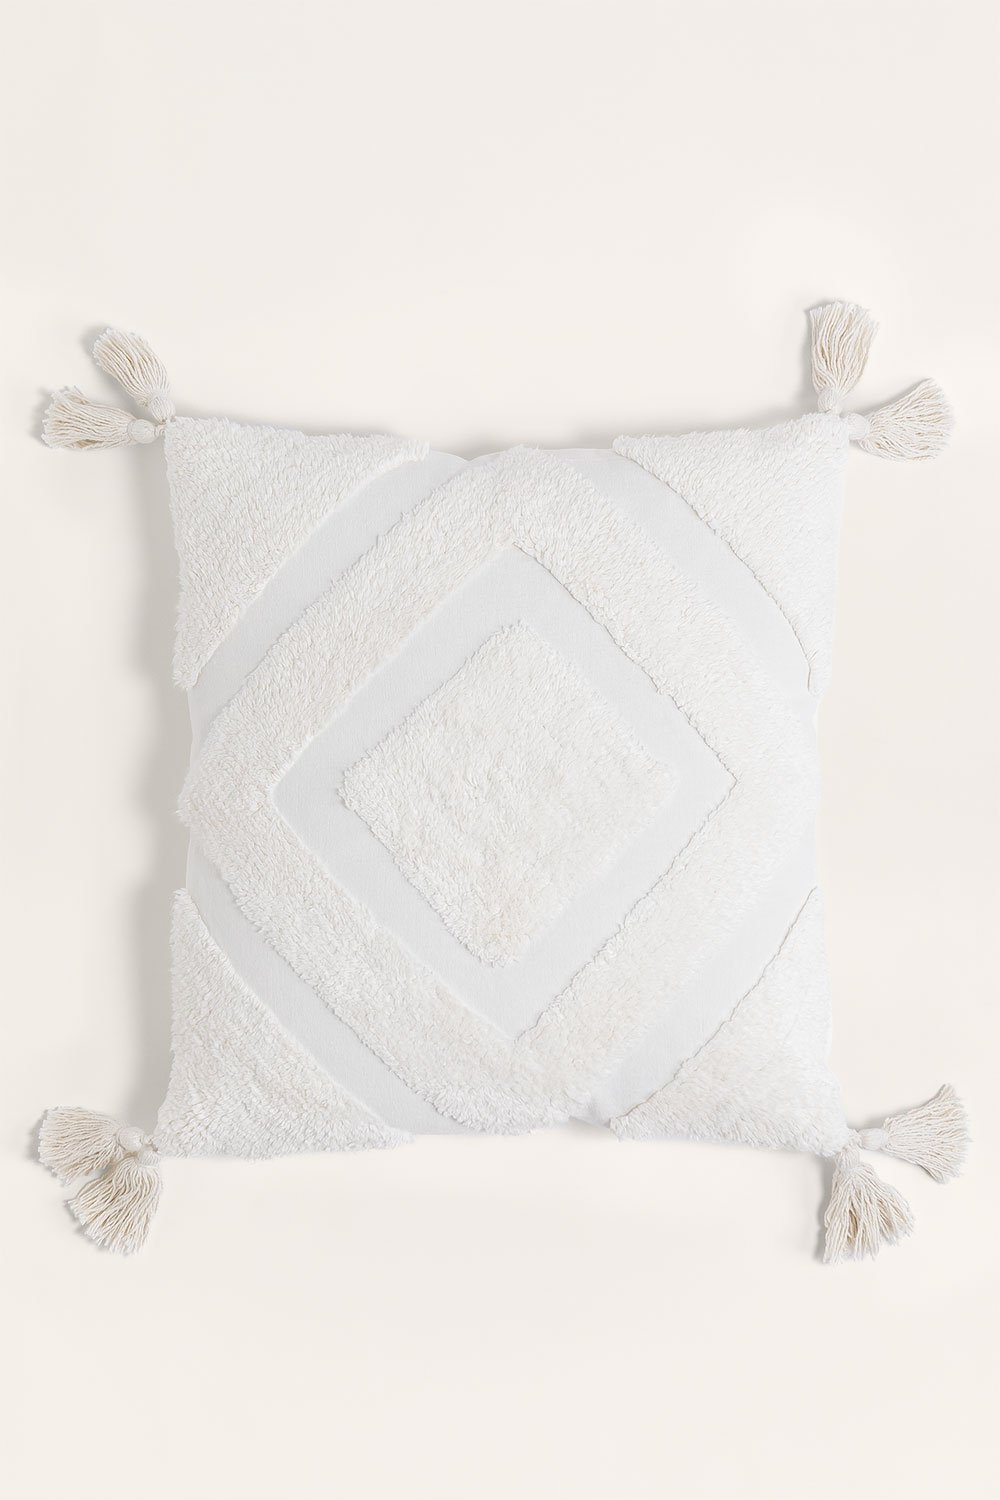 Kwadratowa poduszka z bawełny (45x45 cm) Sowyer, obrazek w galerii 1